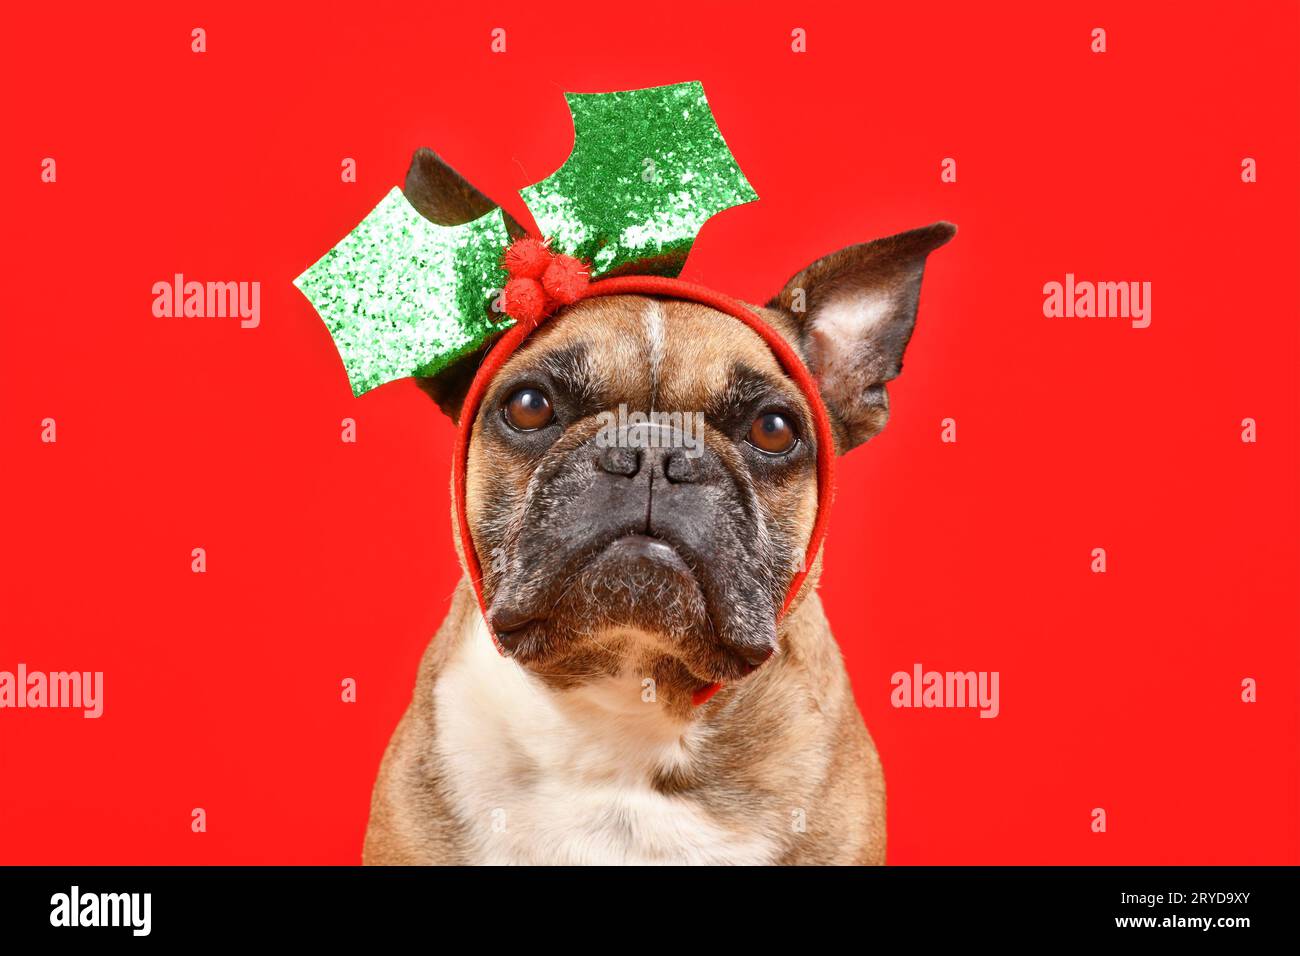 French Bulldog dog with Christmas mistletoe headband on red background Stock Photo